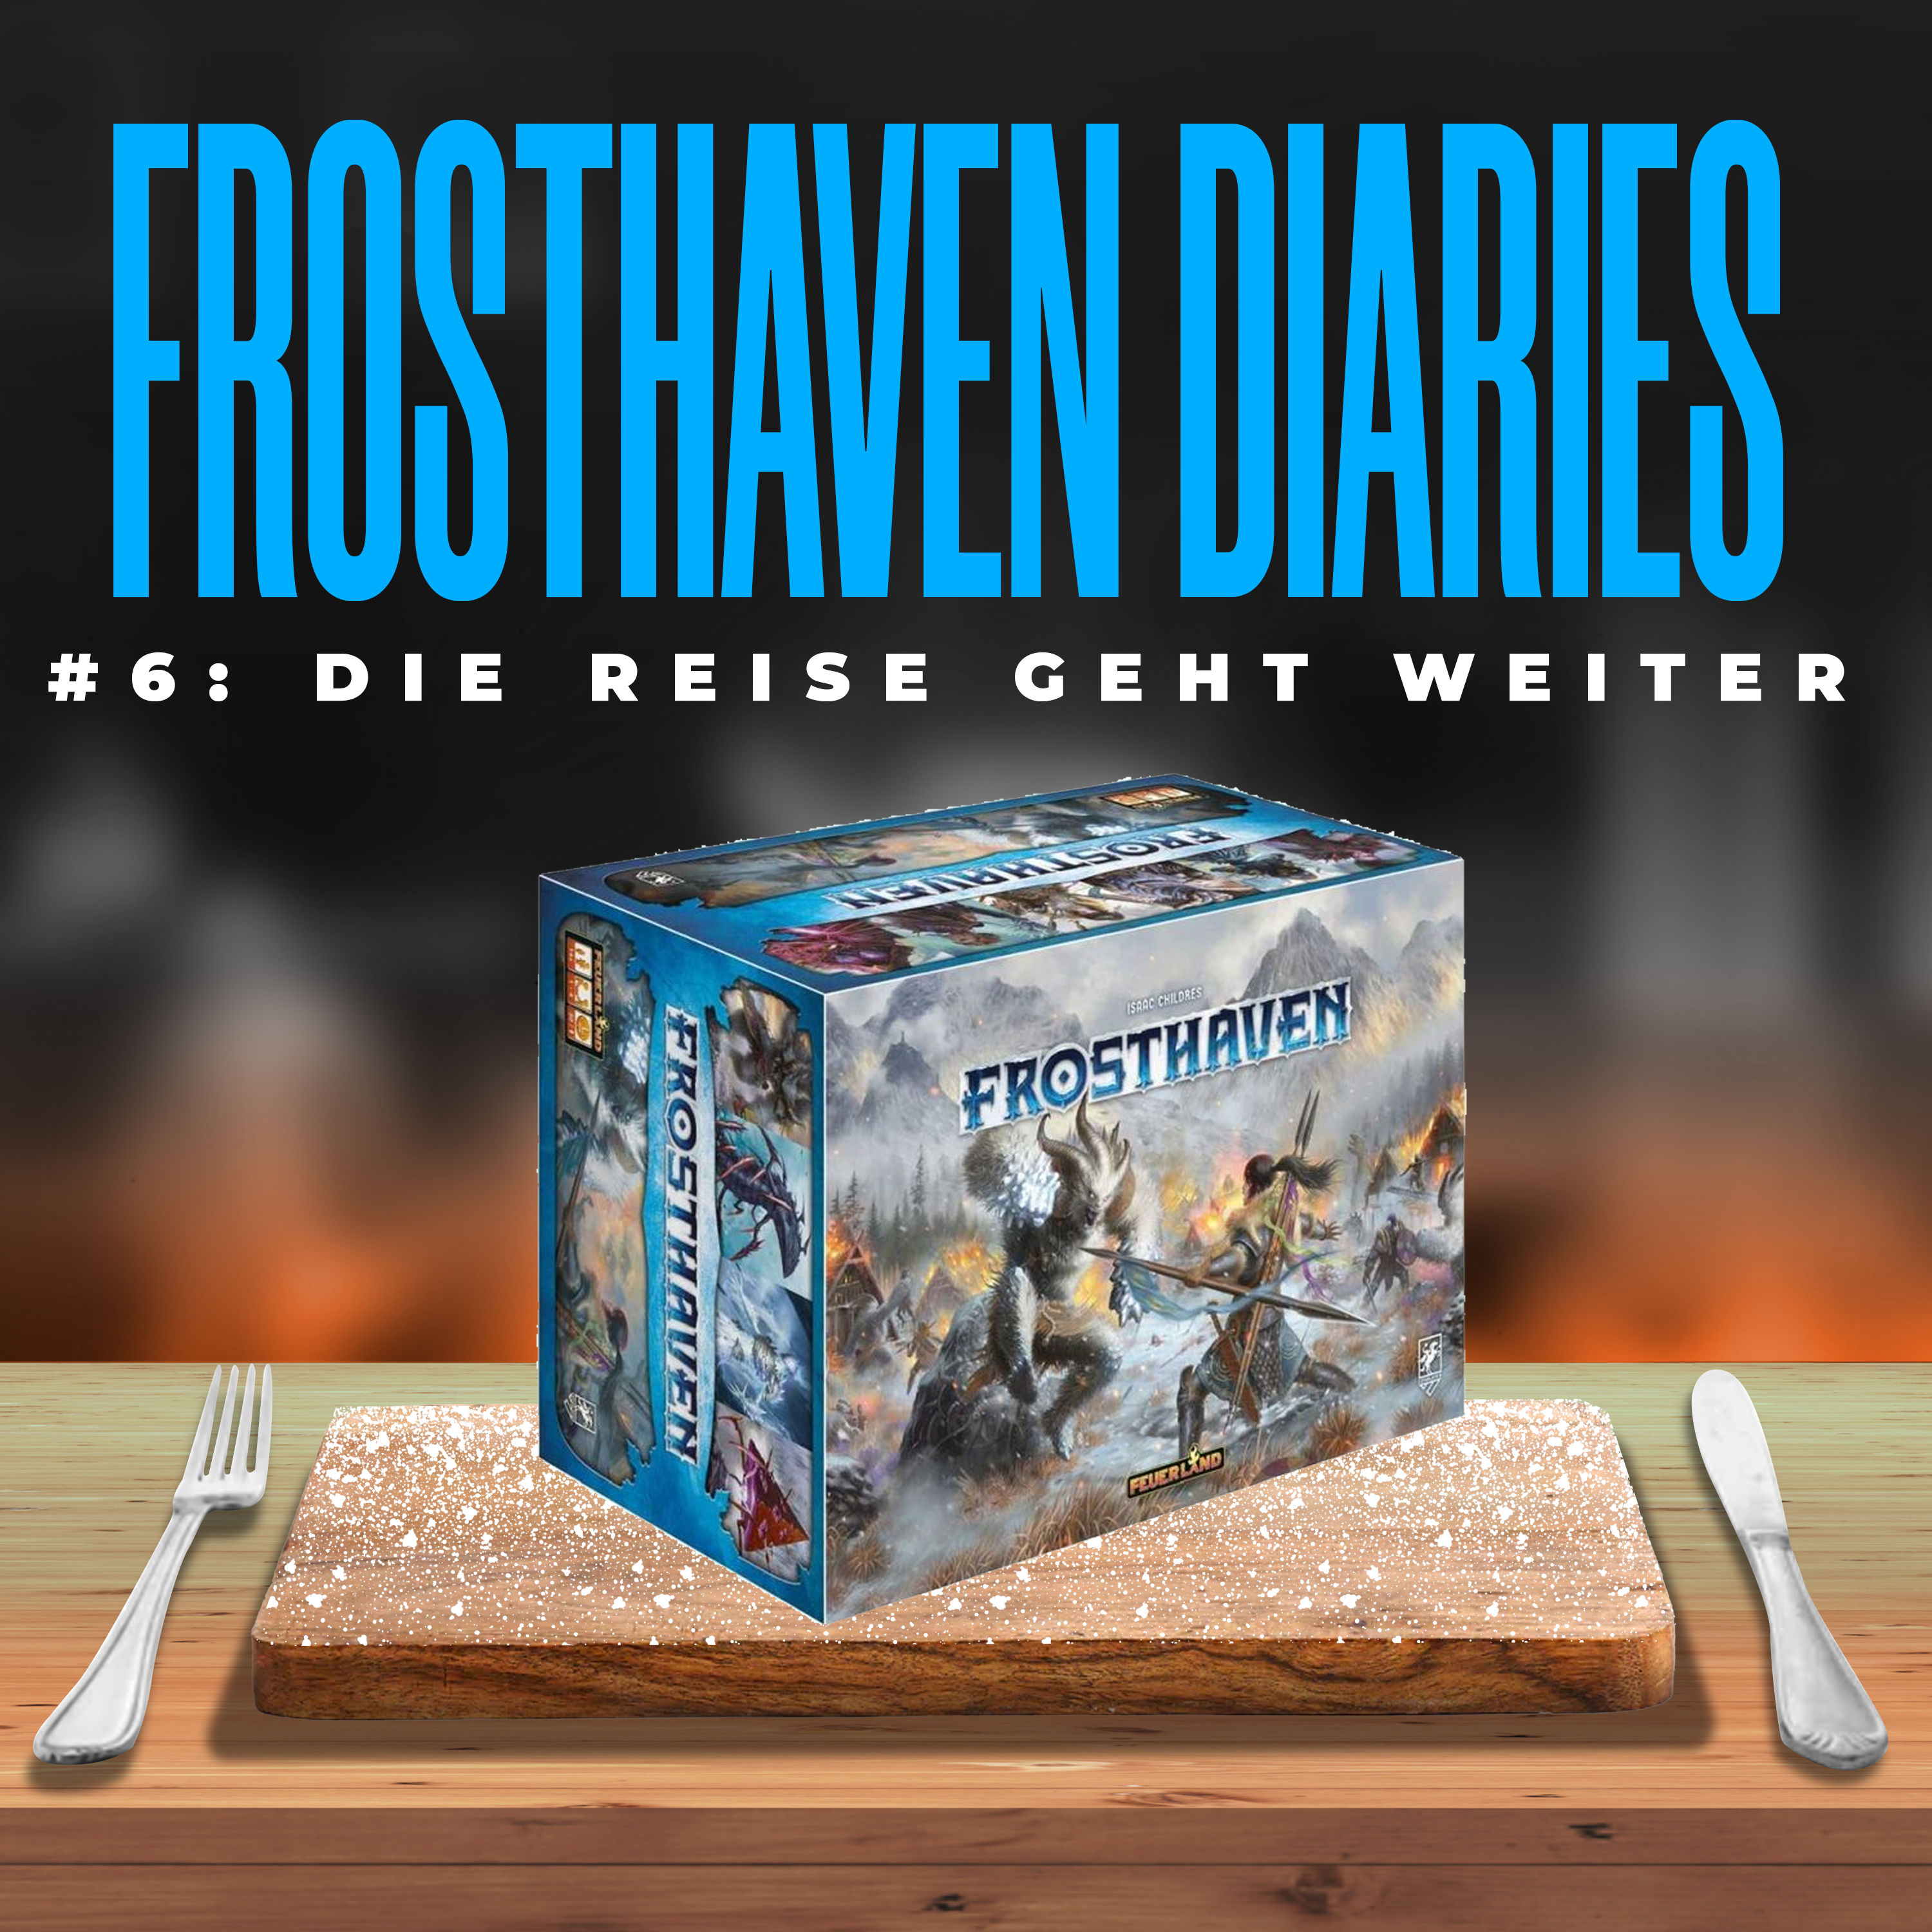 Frosthaven Diaries #6: Die Reise geht weiter